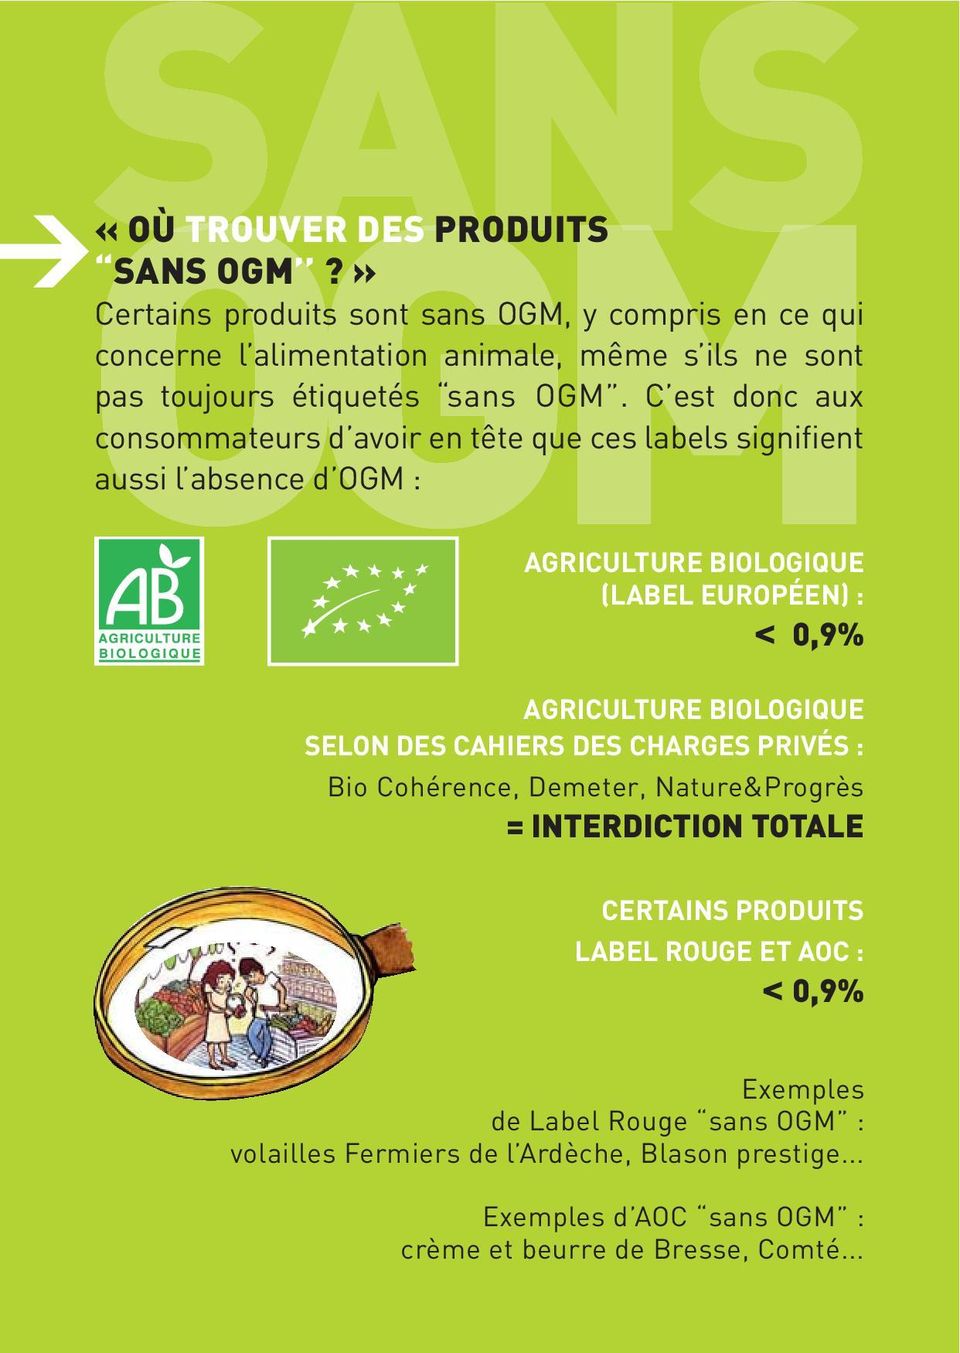 C est donc aux consommateurs d avoir en tête que ces labels signifient aussi l absence d OGM : AGRICULTURE BIOLOGIQUE (LABEL EUROPÉEN) : < 0,9% AGRICULTURE